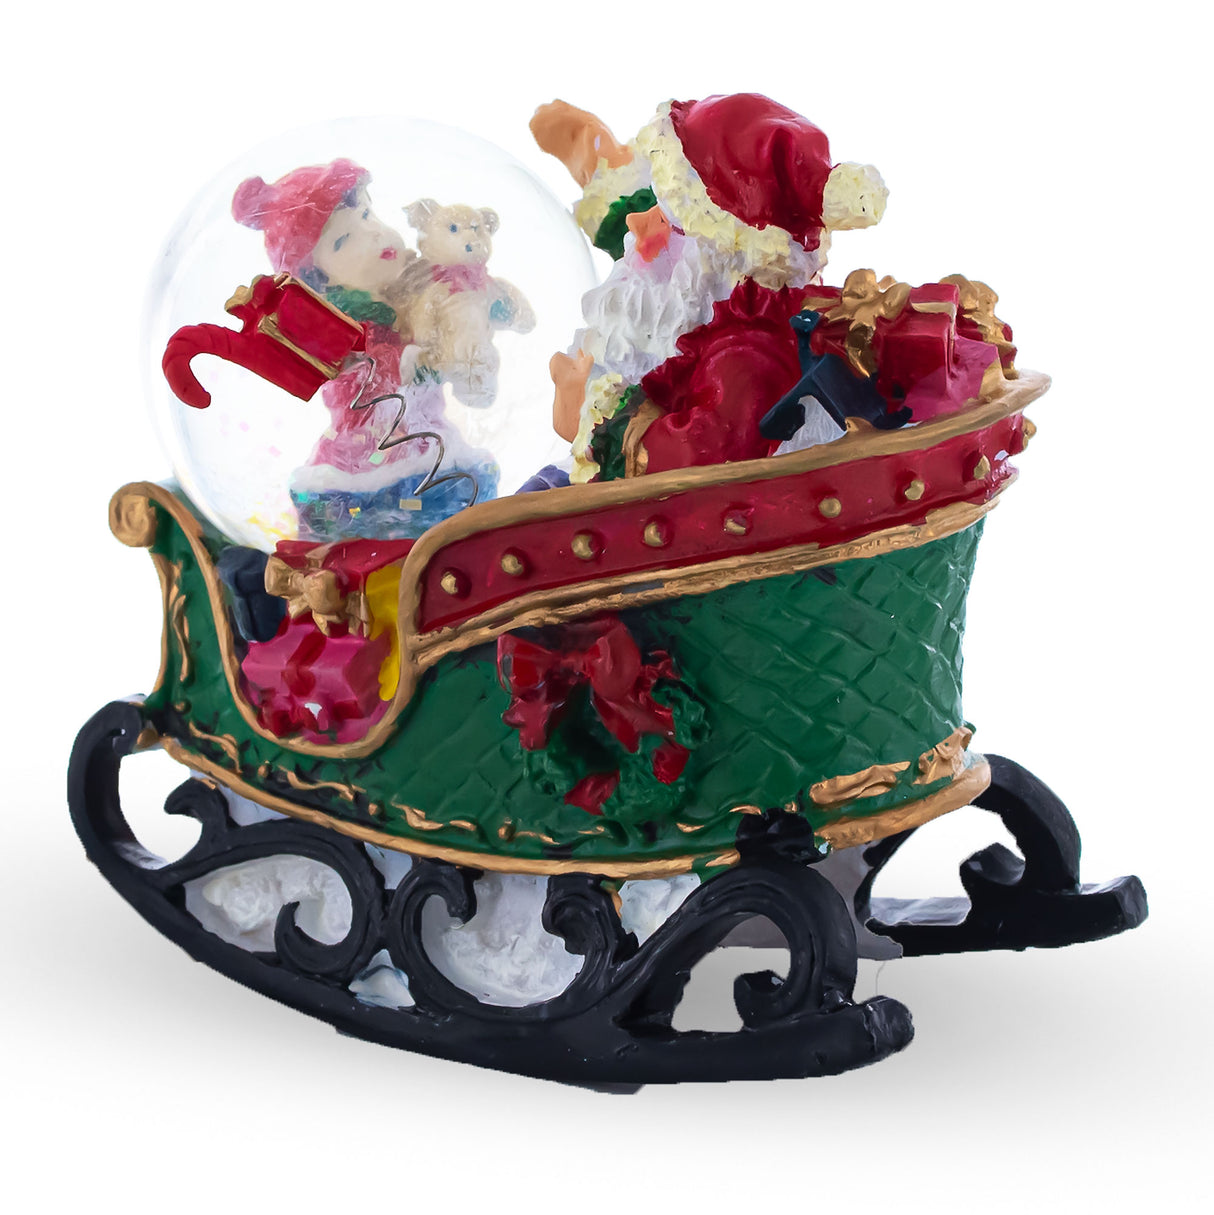 Buy Snow Globes > Santa by BestPysanky Online Gift Ship